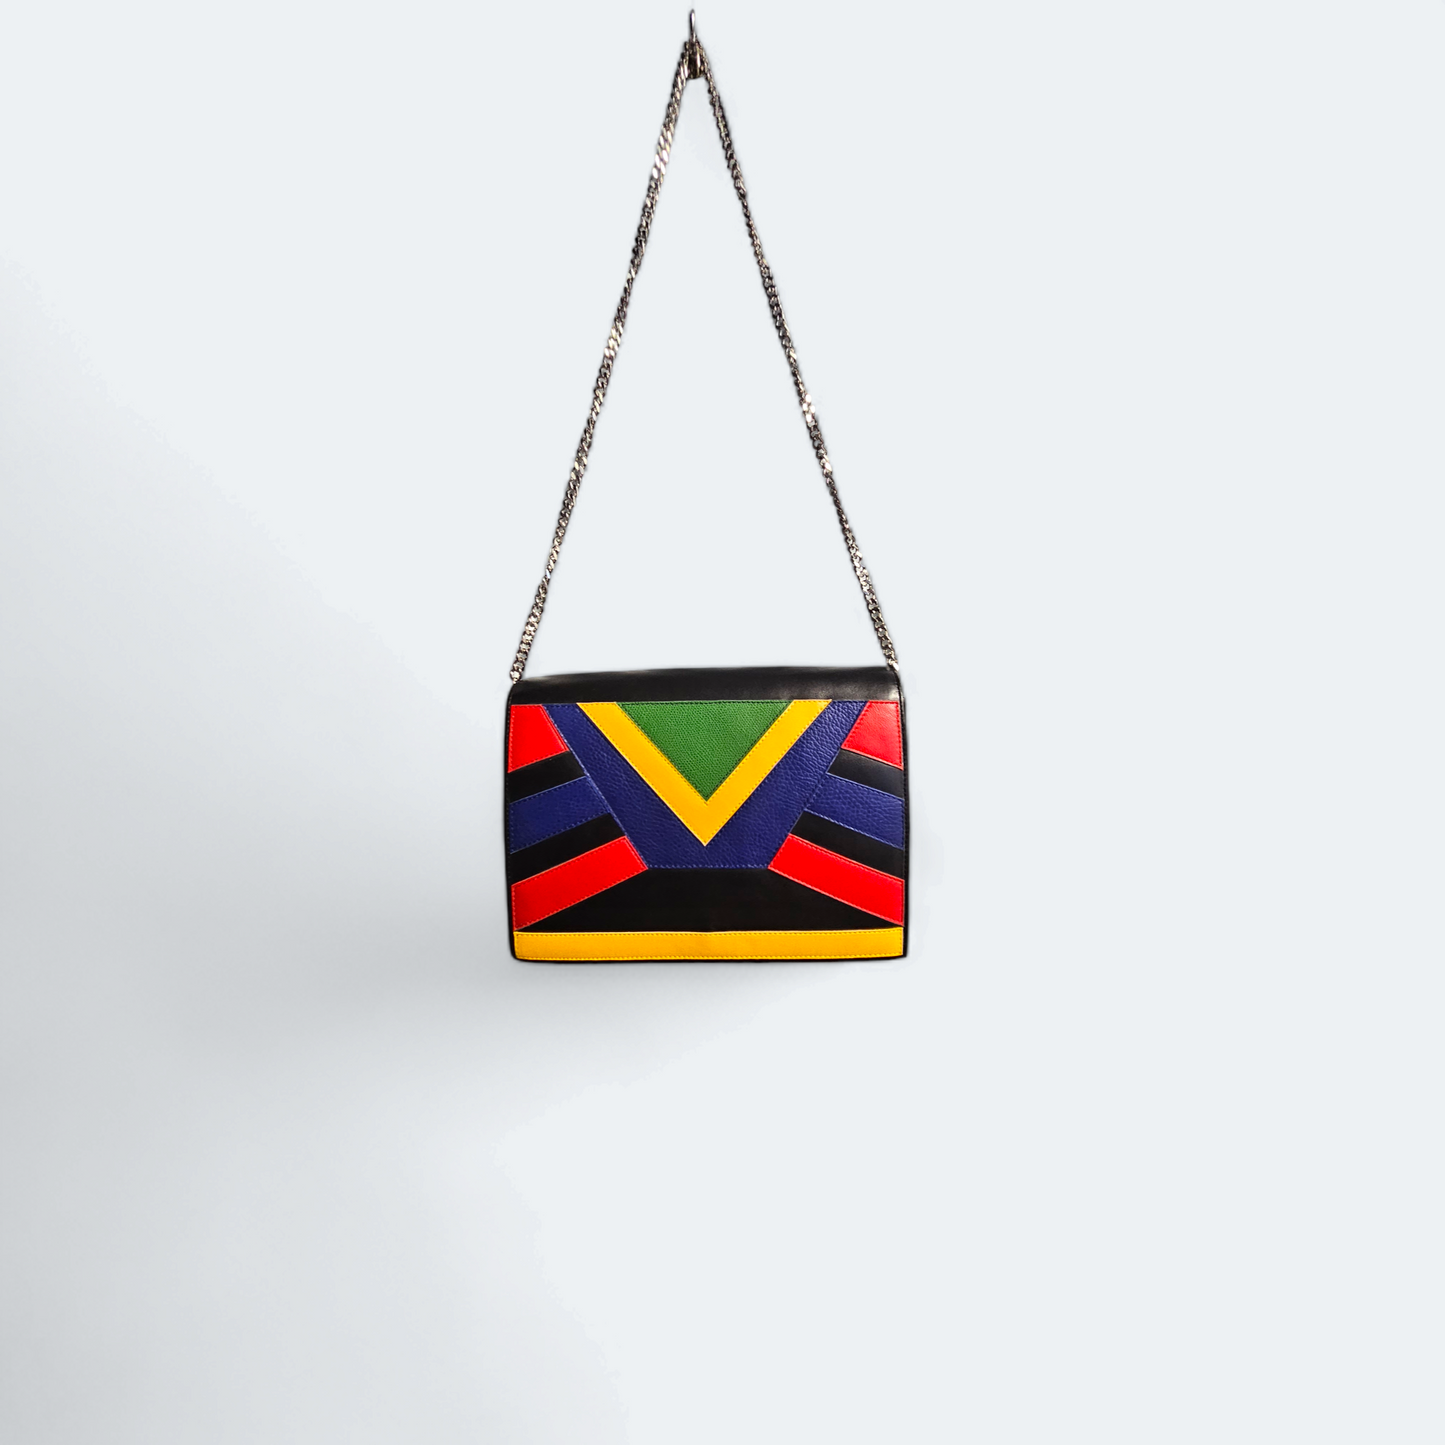 Black shoulder bag with geometric patterns